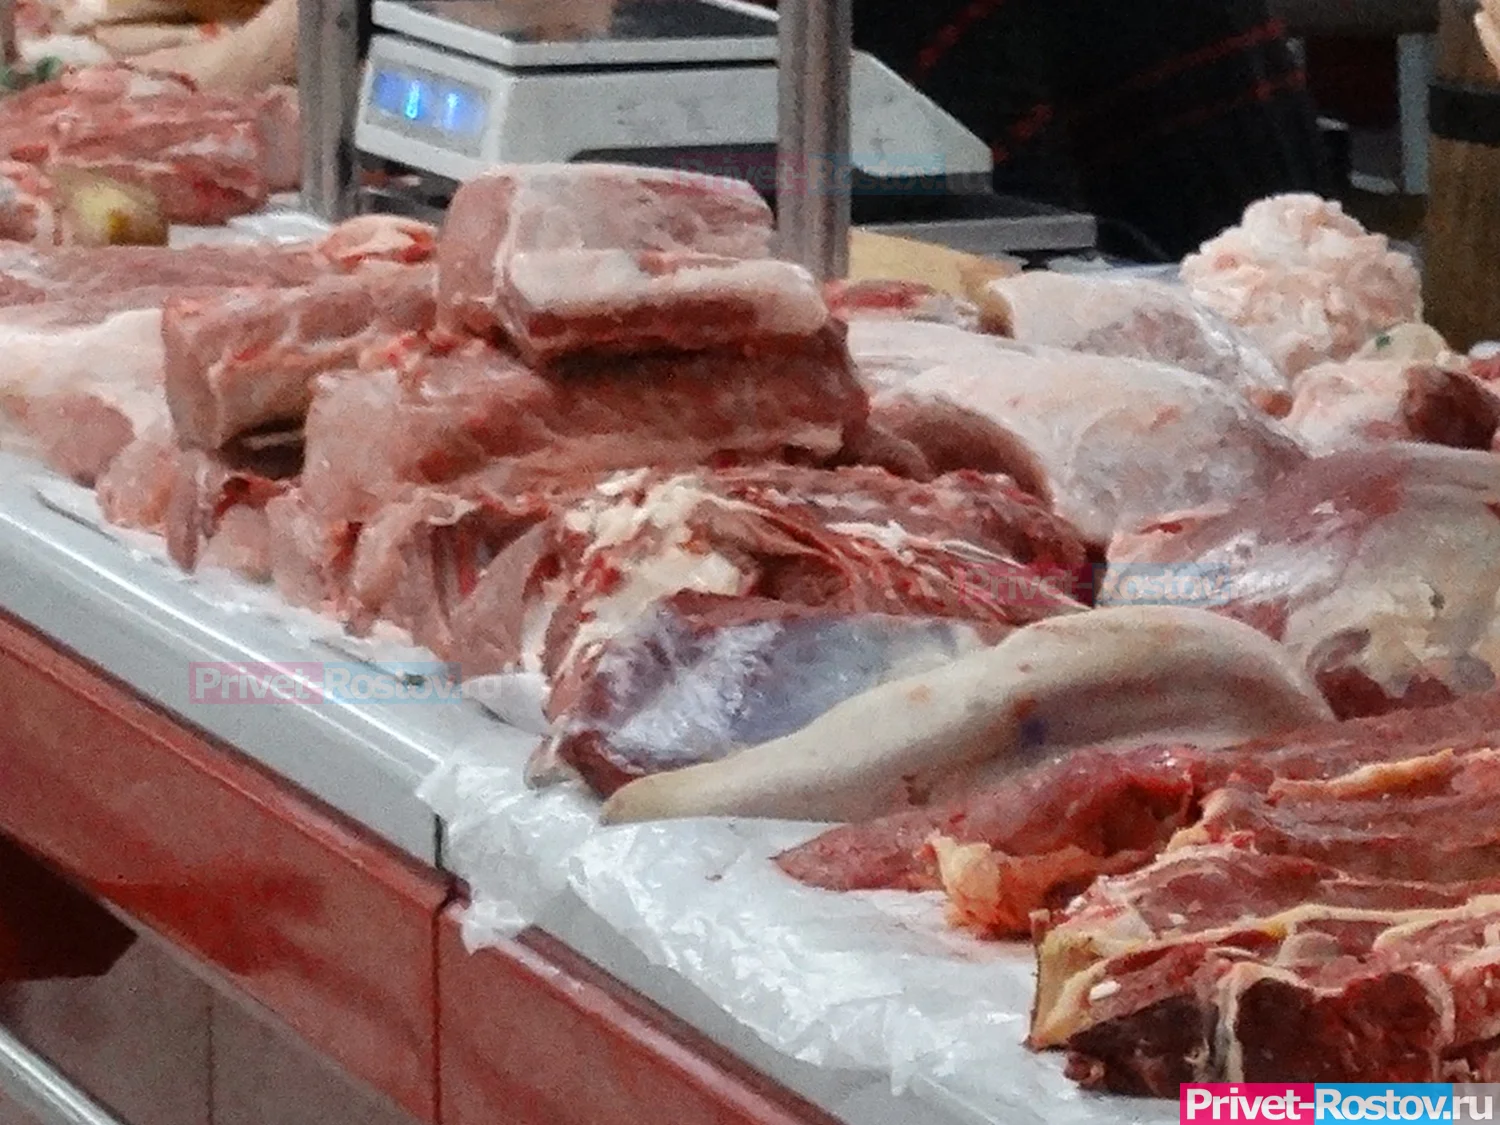 Резкий скачок цен за май произошел в Ростове-на-Дону на мясо и лекарства